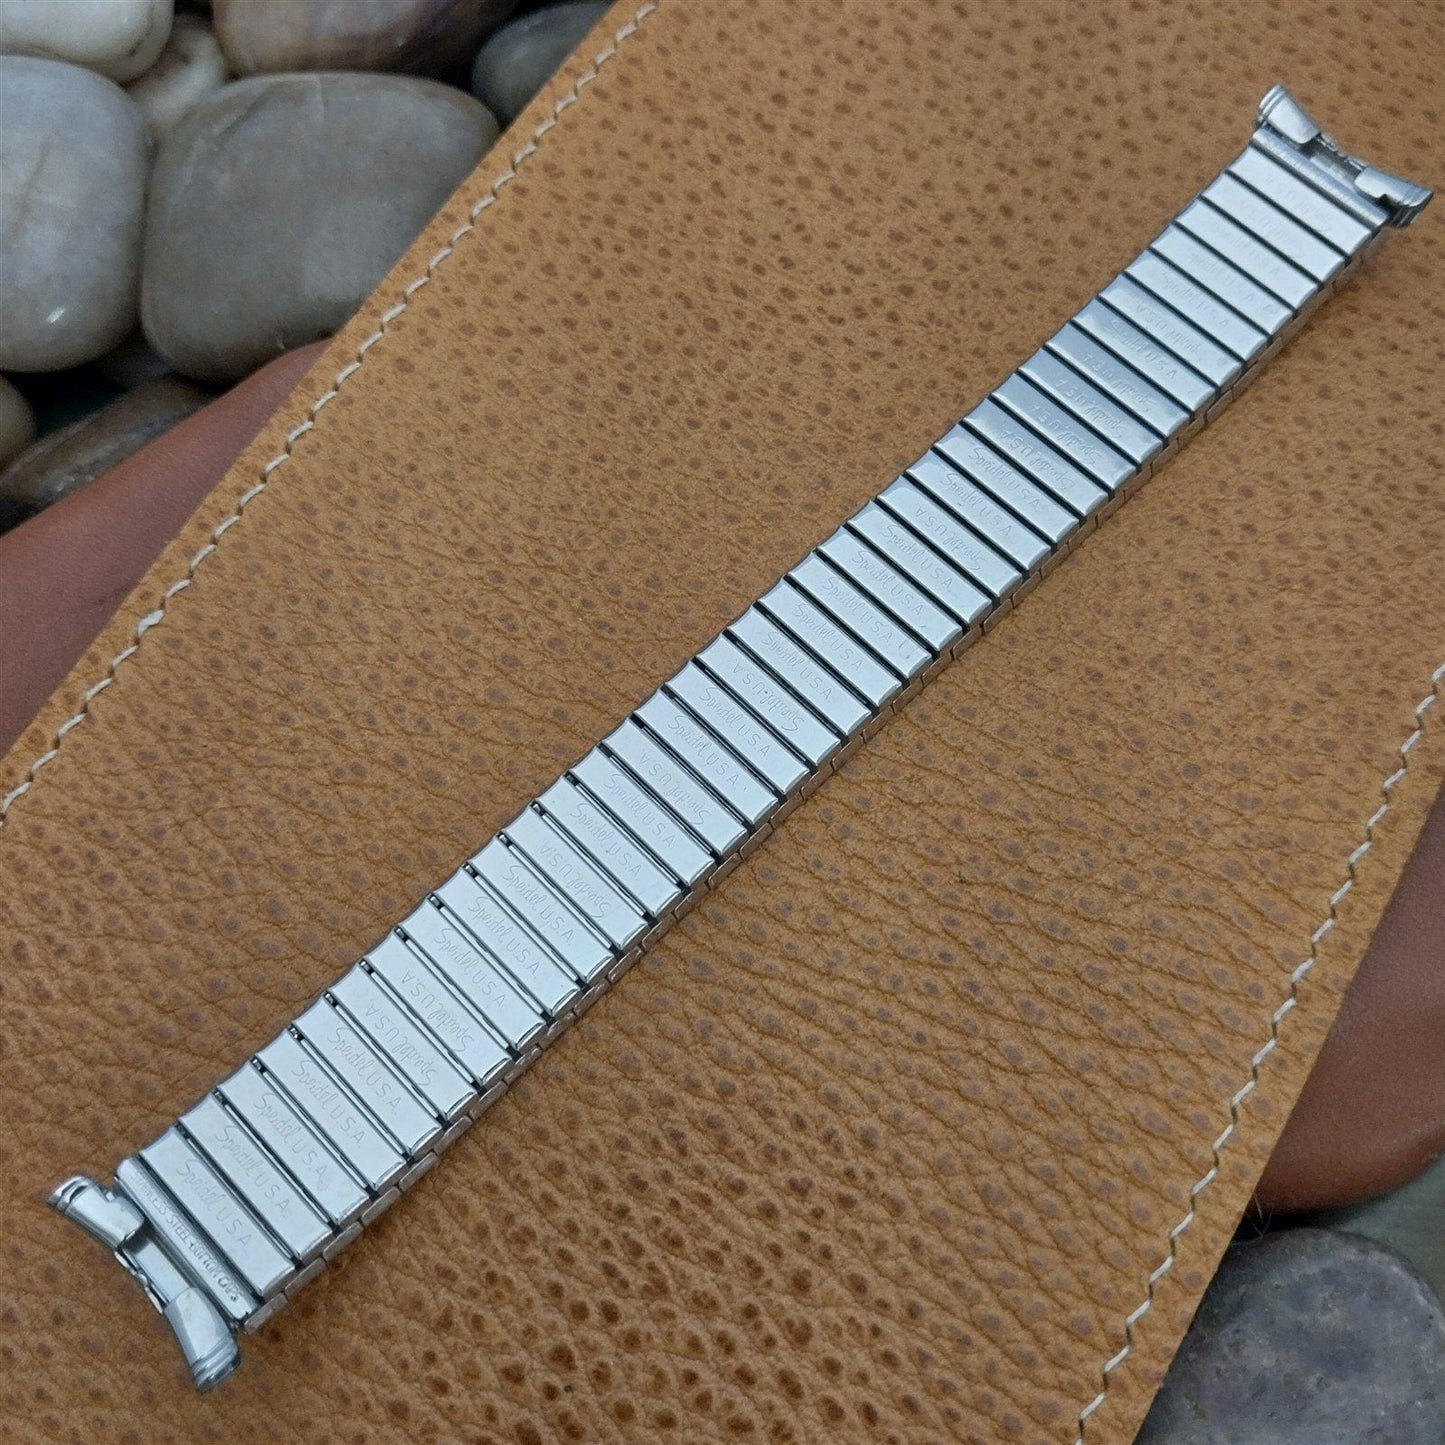 19mm Speidel Radial Wide Brushed Stainless Steel Unused 1970s Vintage Watch Band